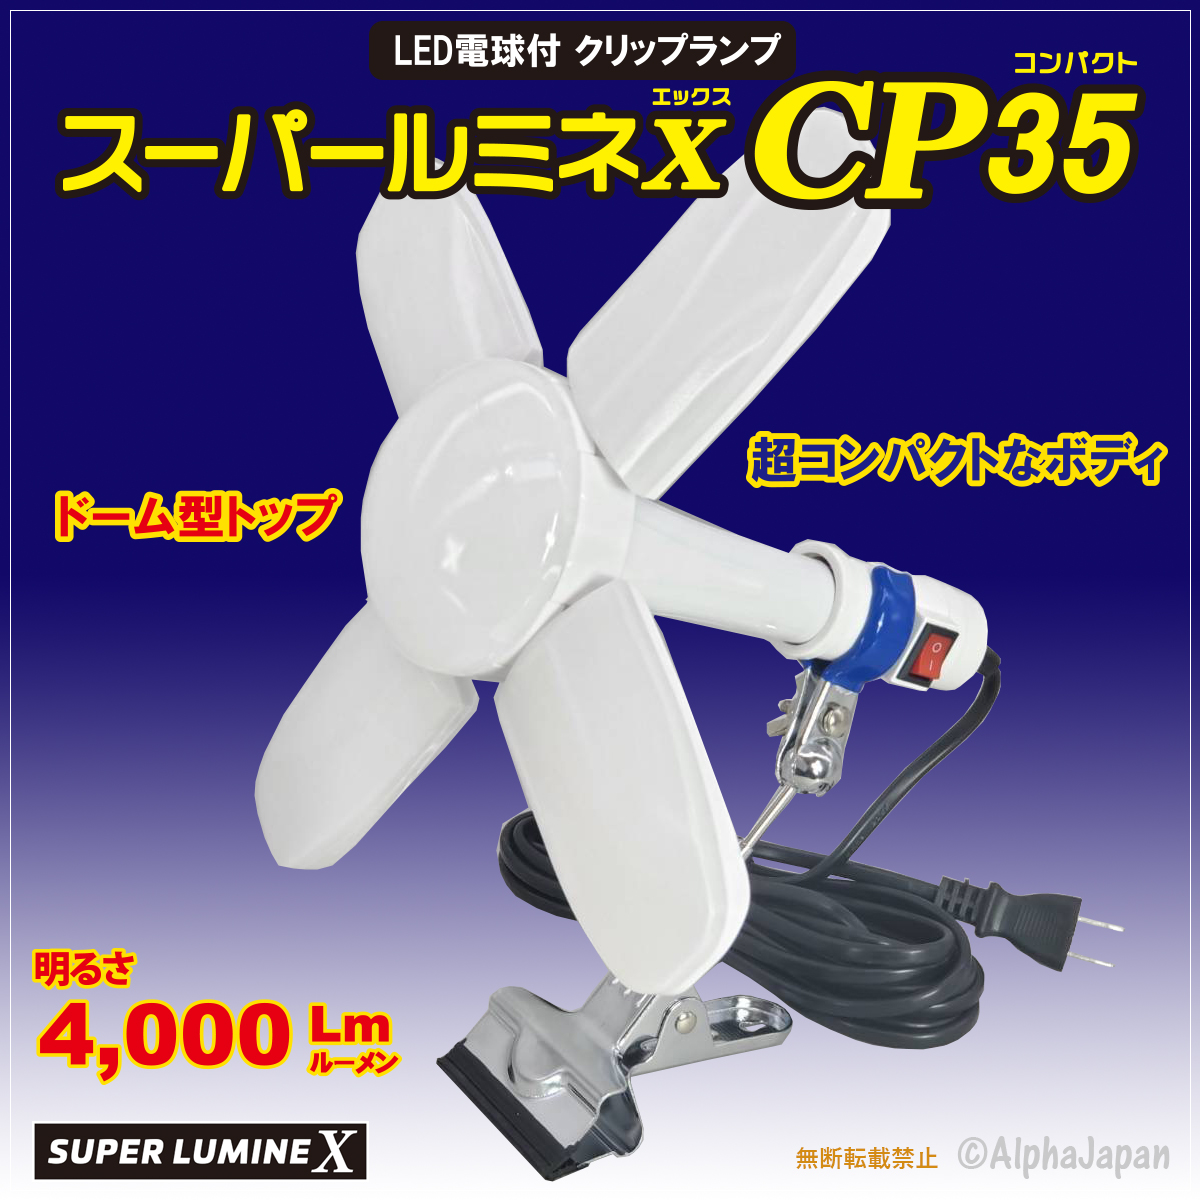 スーパールミネX CP35